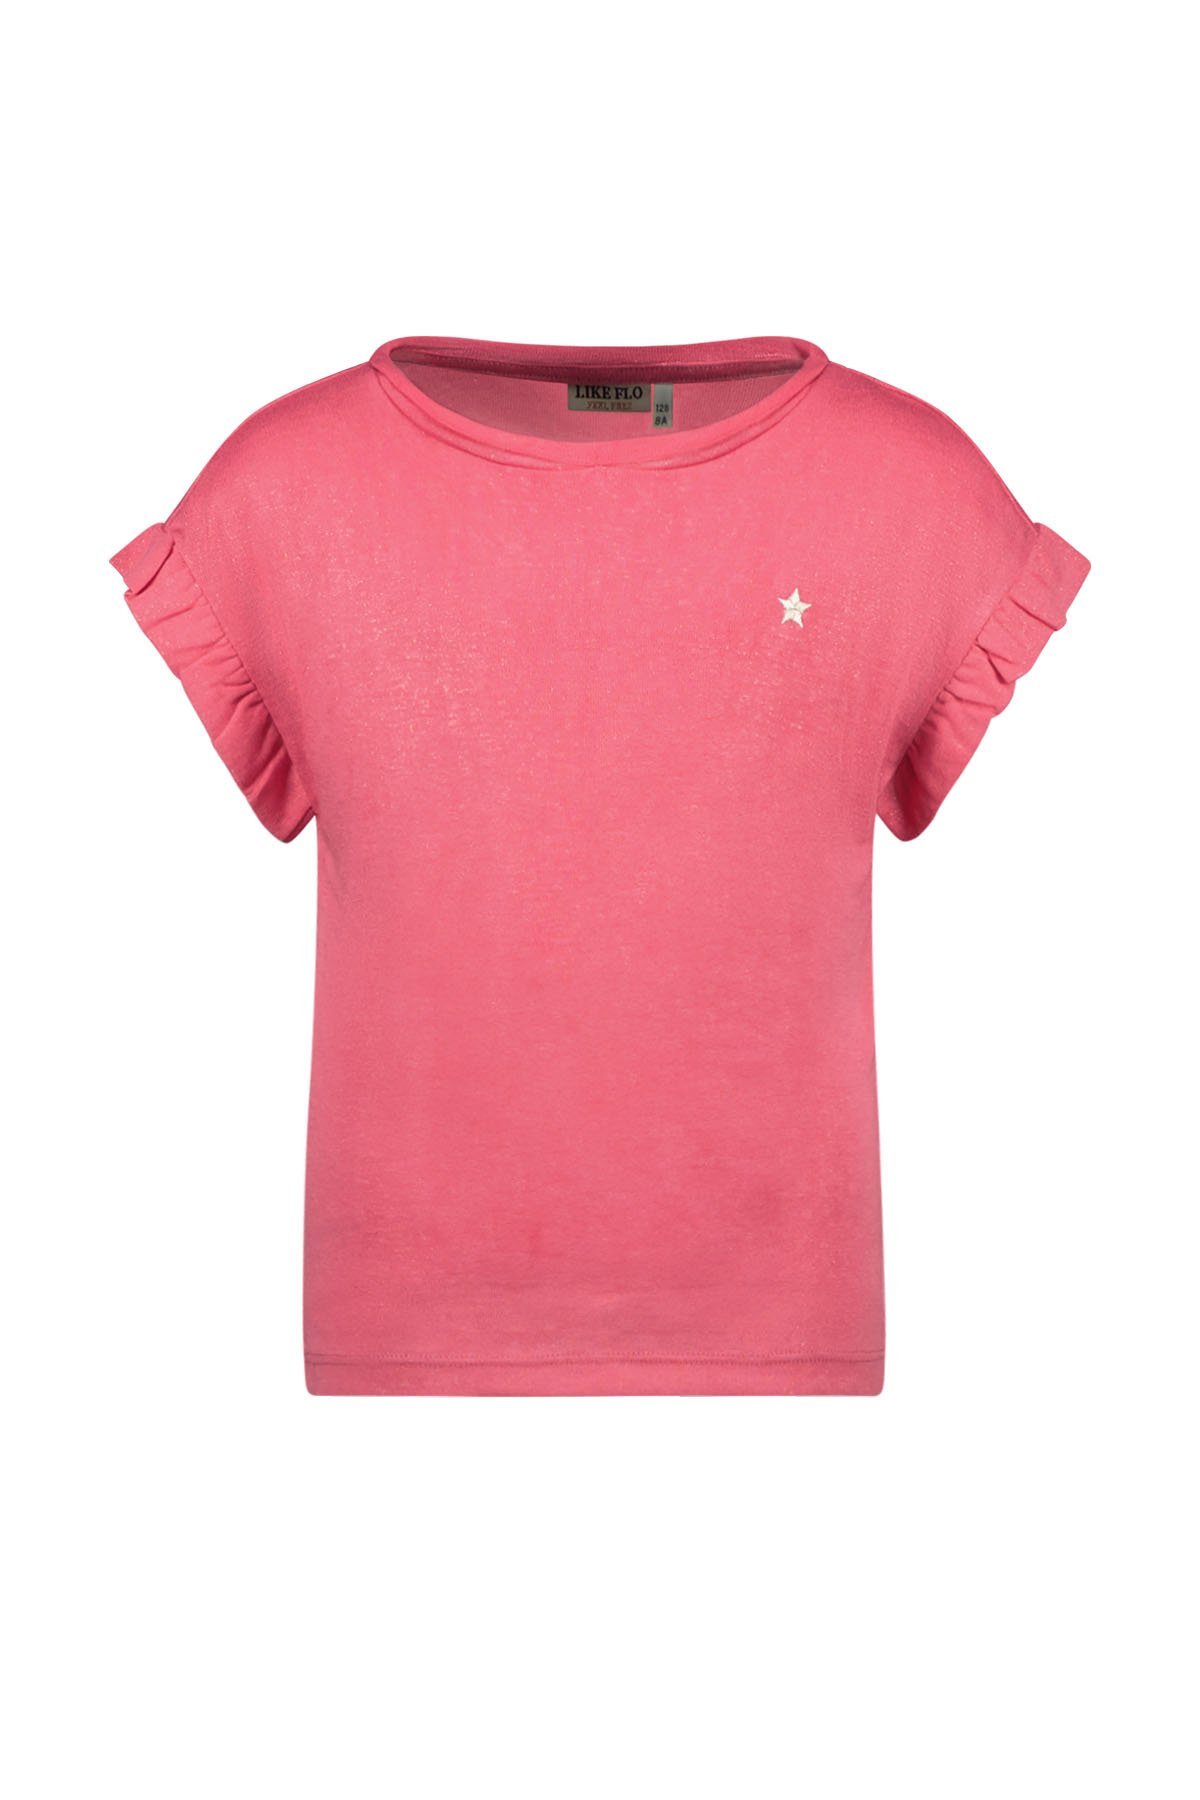 Like Flo F402-5430 Meisjes T-shirt - Pink - Maat 116